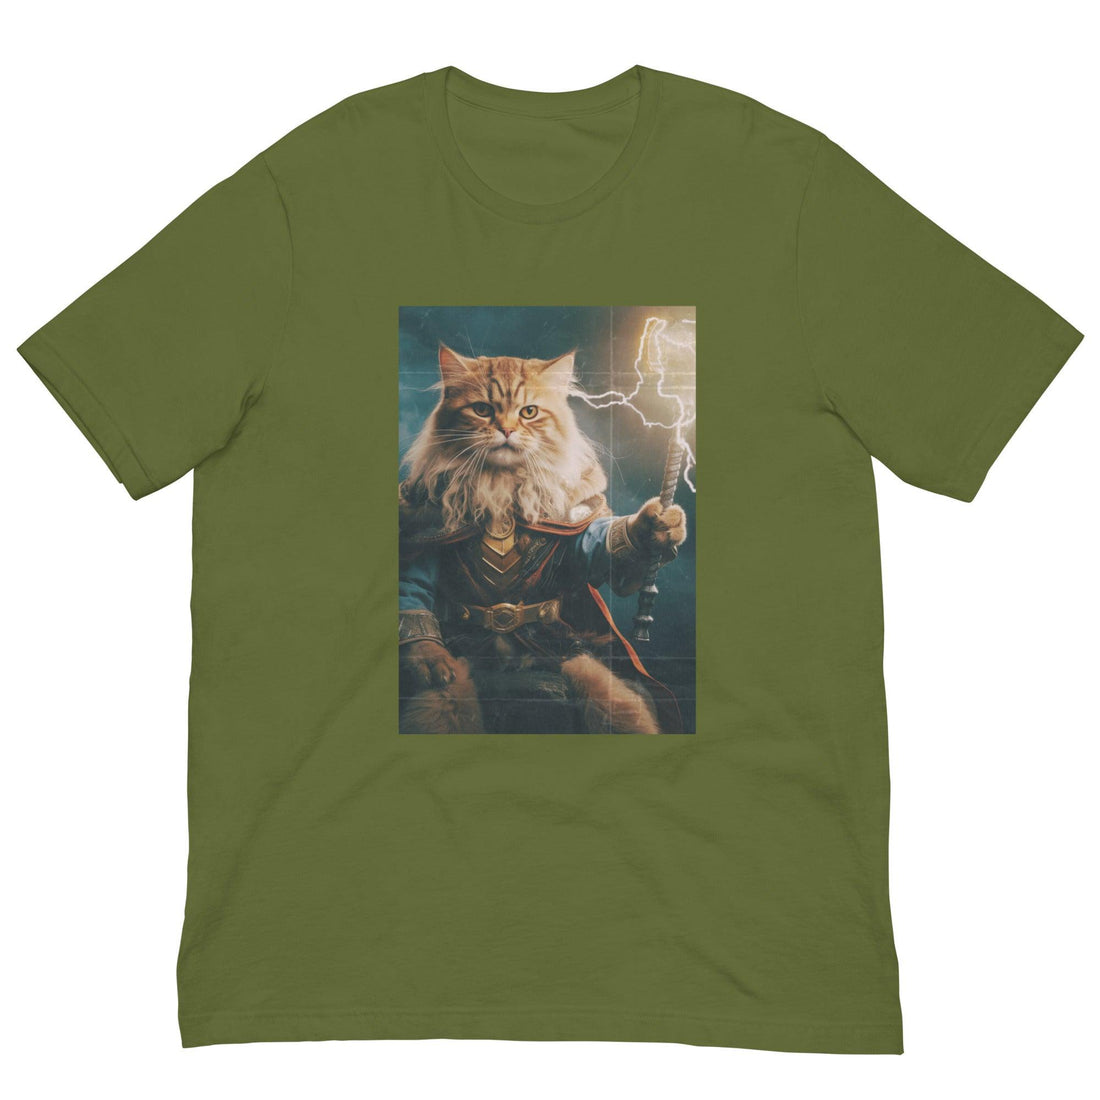 Zeus Cat Shirt - Cat Shirts USA